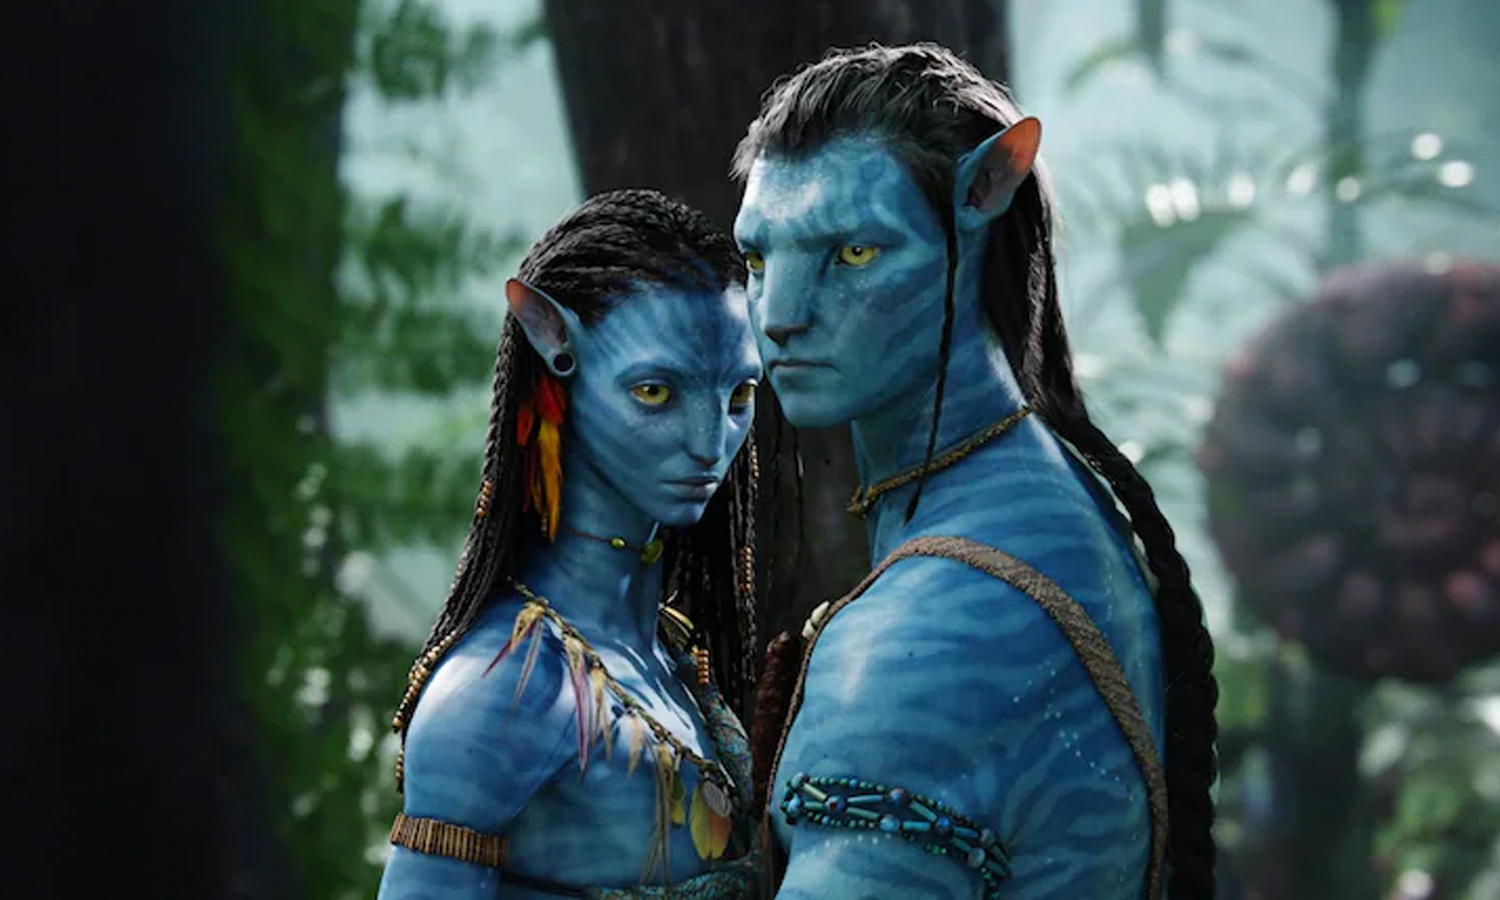 Trailer đầu tiên của Avatar 2 có gần 150 triệu lượt xem chỉ sau ngày đầu